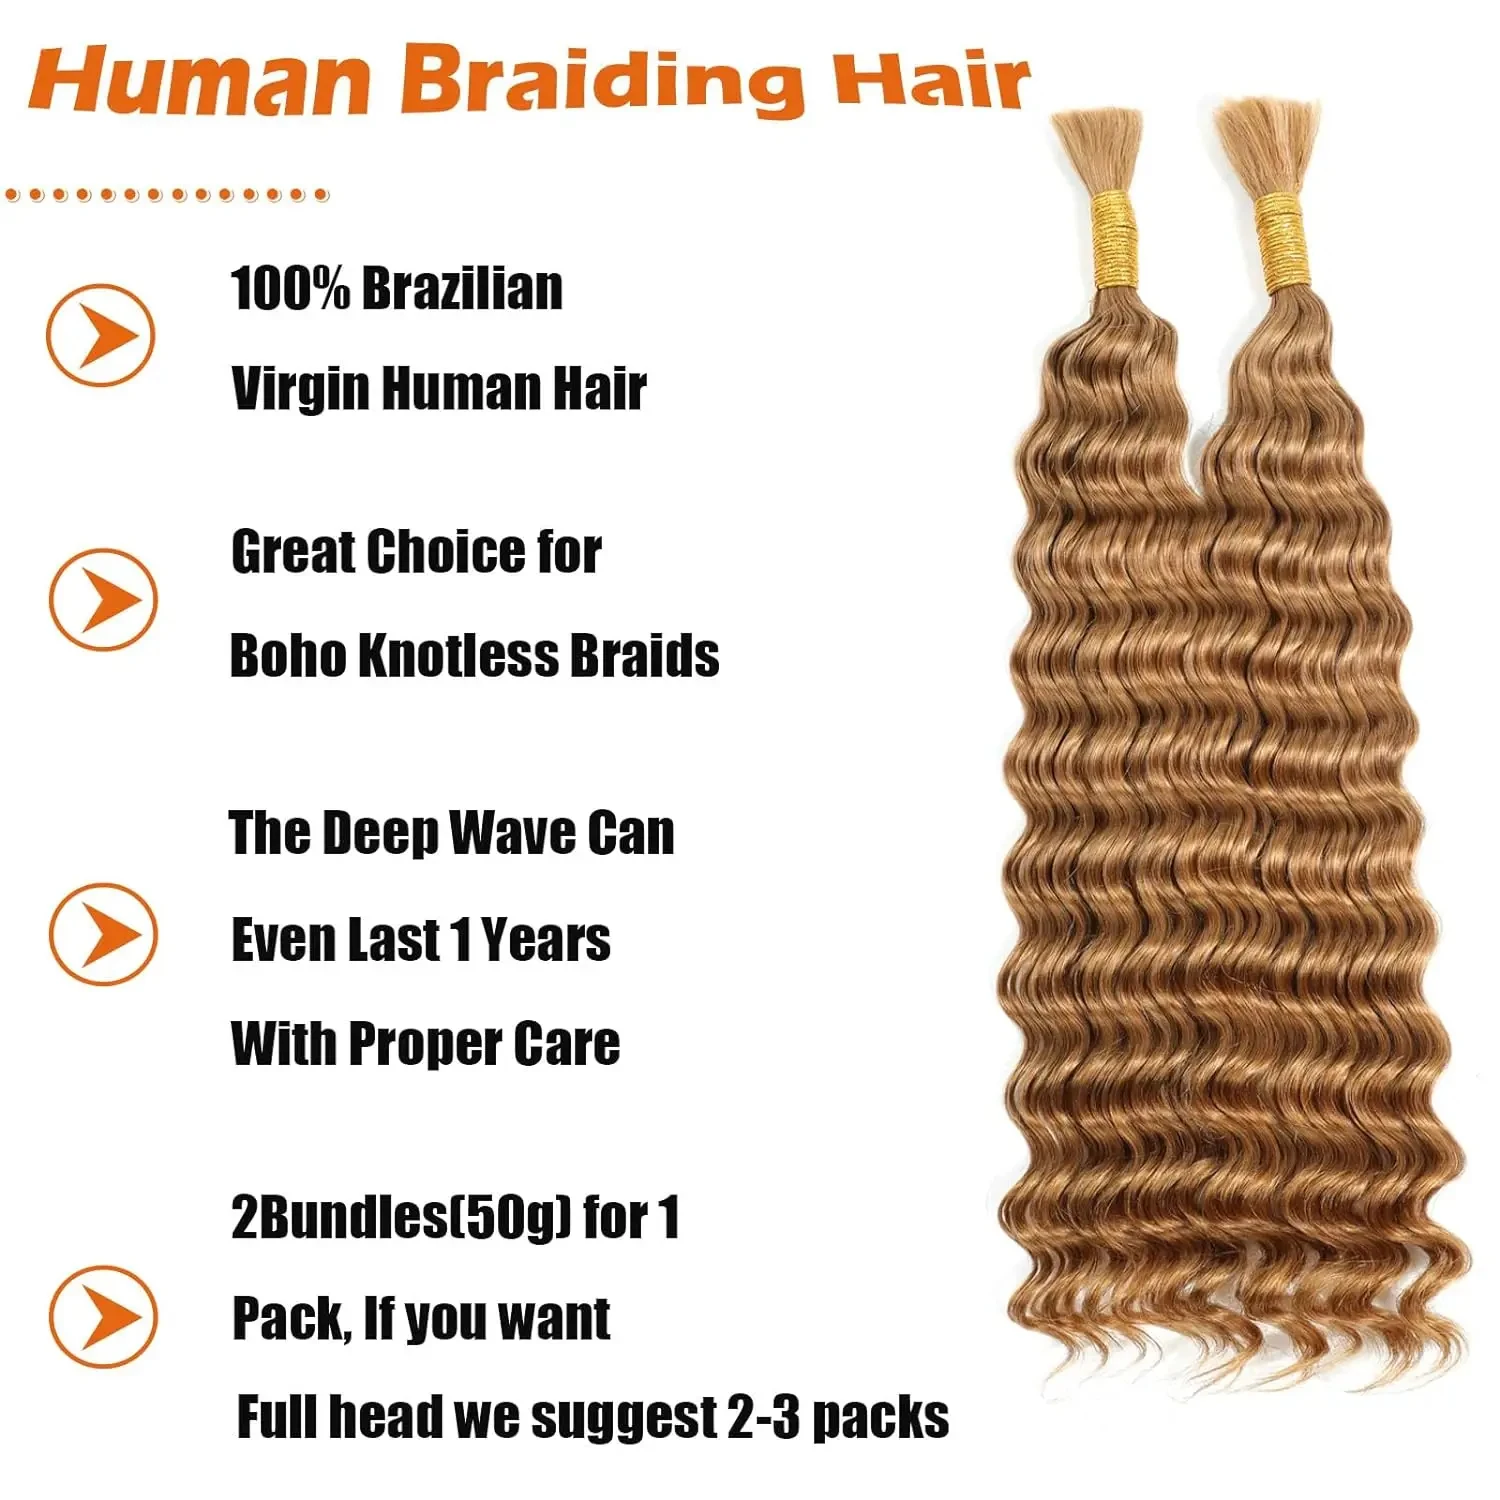 26 28 Inch Deep Wave Bulk Human Hair for Braiding No Weft 100% Virgin Hair Curly Human Braiding Hair Extensions for Boho Braids